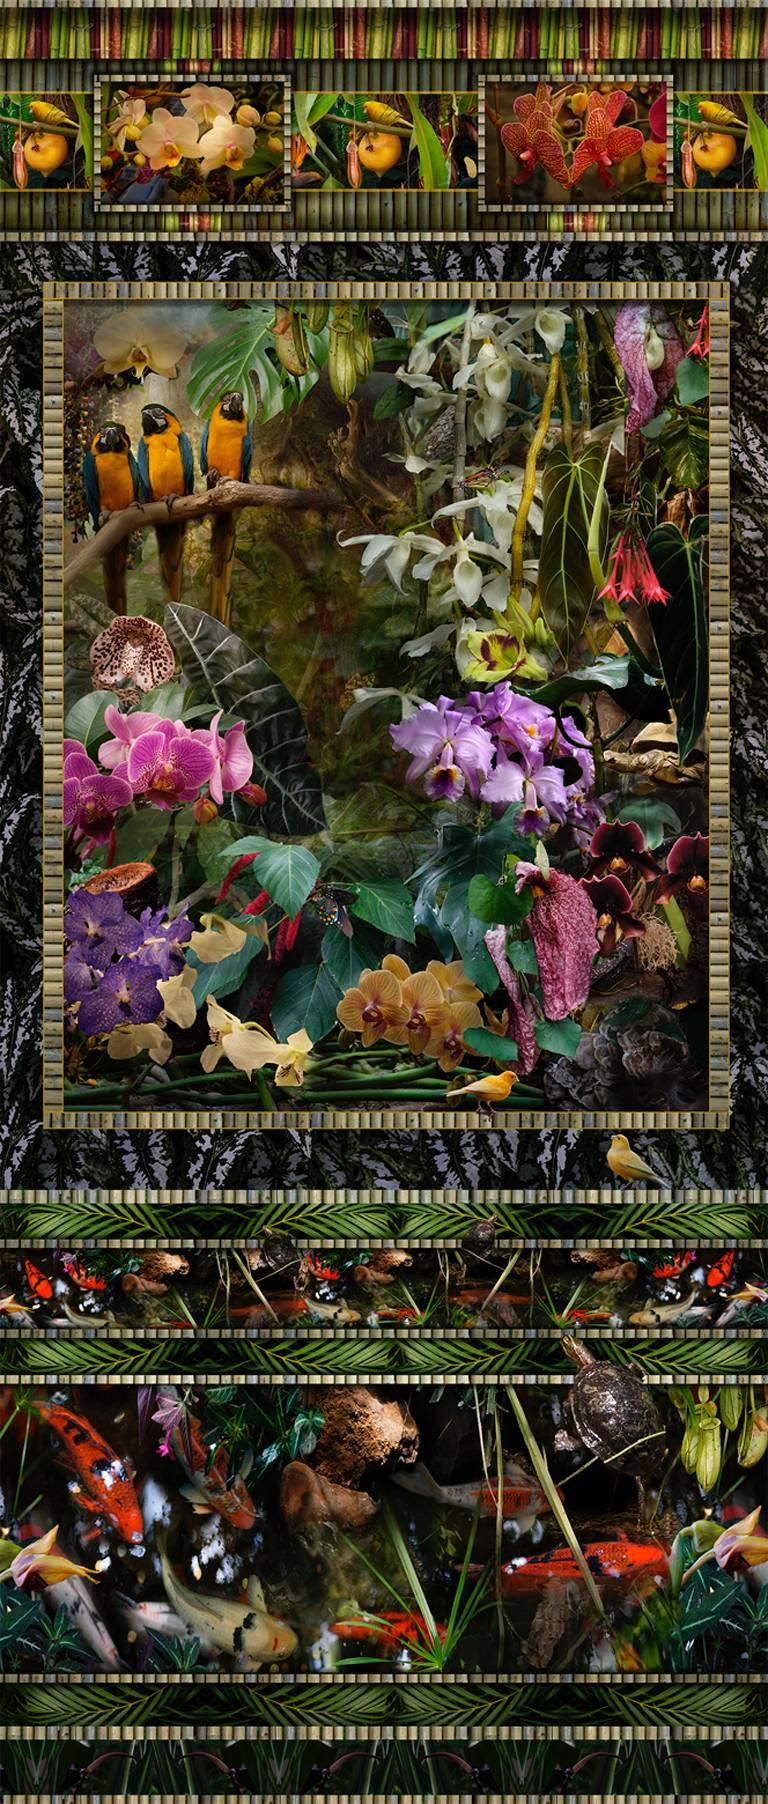 Lisa A. Frank Figurative Photograph – Conservatory (Vertikale Stilllebenfotografie von tropischen Vögeln und exotischen Blumen)